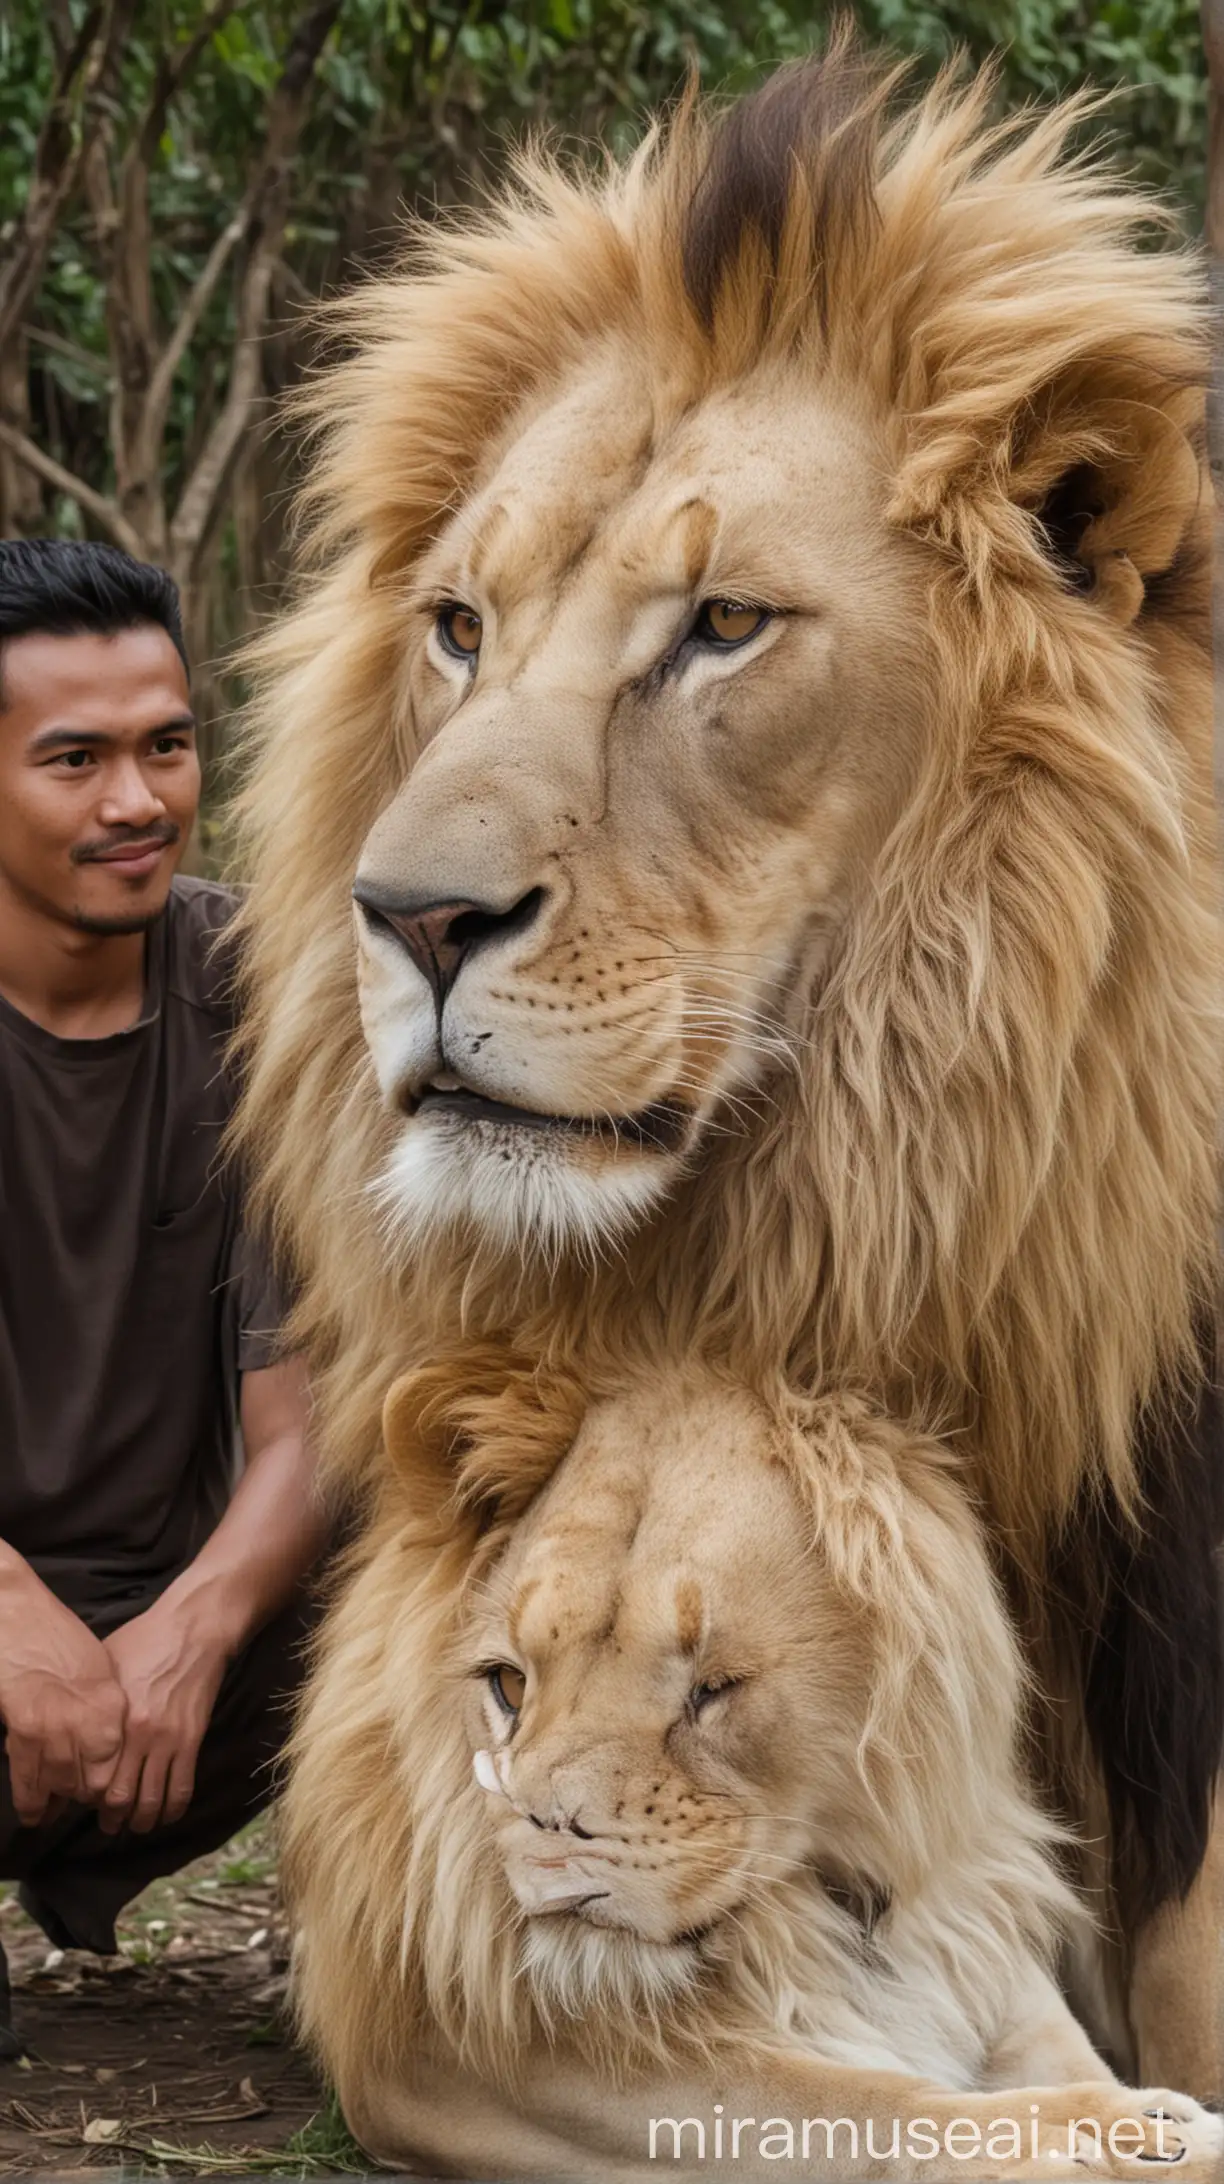 foto harimau bersama pria indonesia berkulit putih
